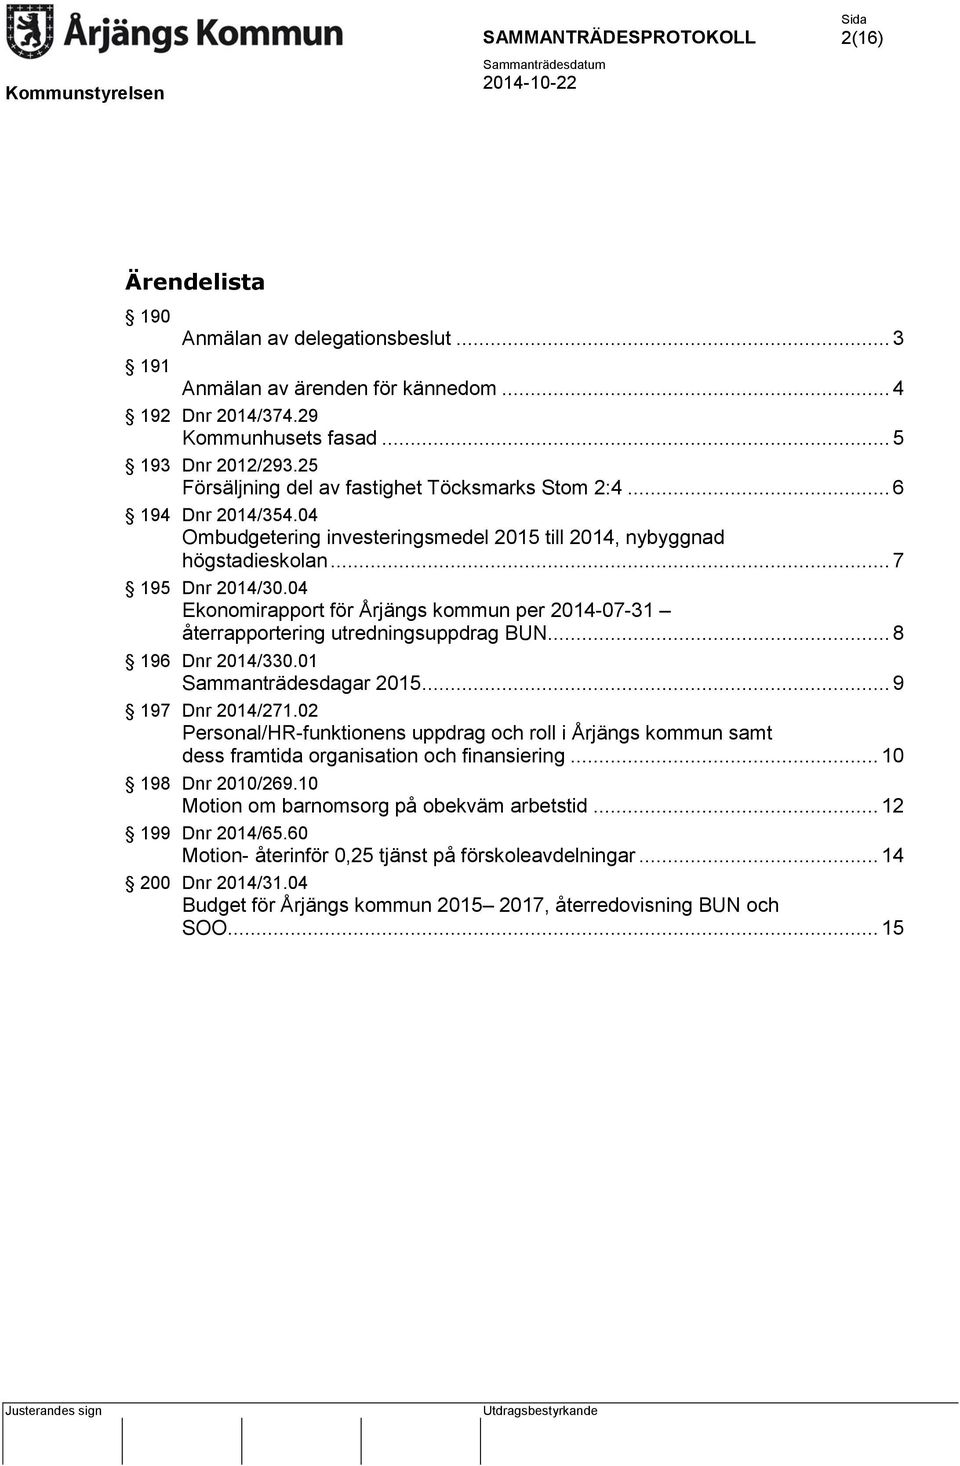 04 Ekonomirapport för Årjängs kommun per 2014-07-31 återrapportering utredningsuppdrag BUN... 8 196 Dnr 2014/330.01 Sammanträdesdagar 2015... 9 197 Dnr 2014/271.